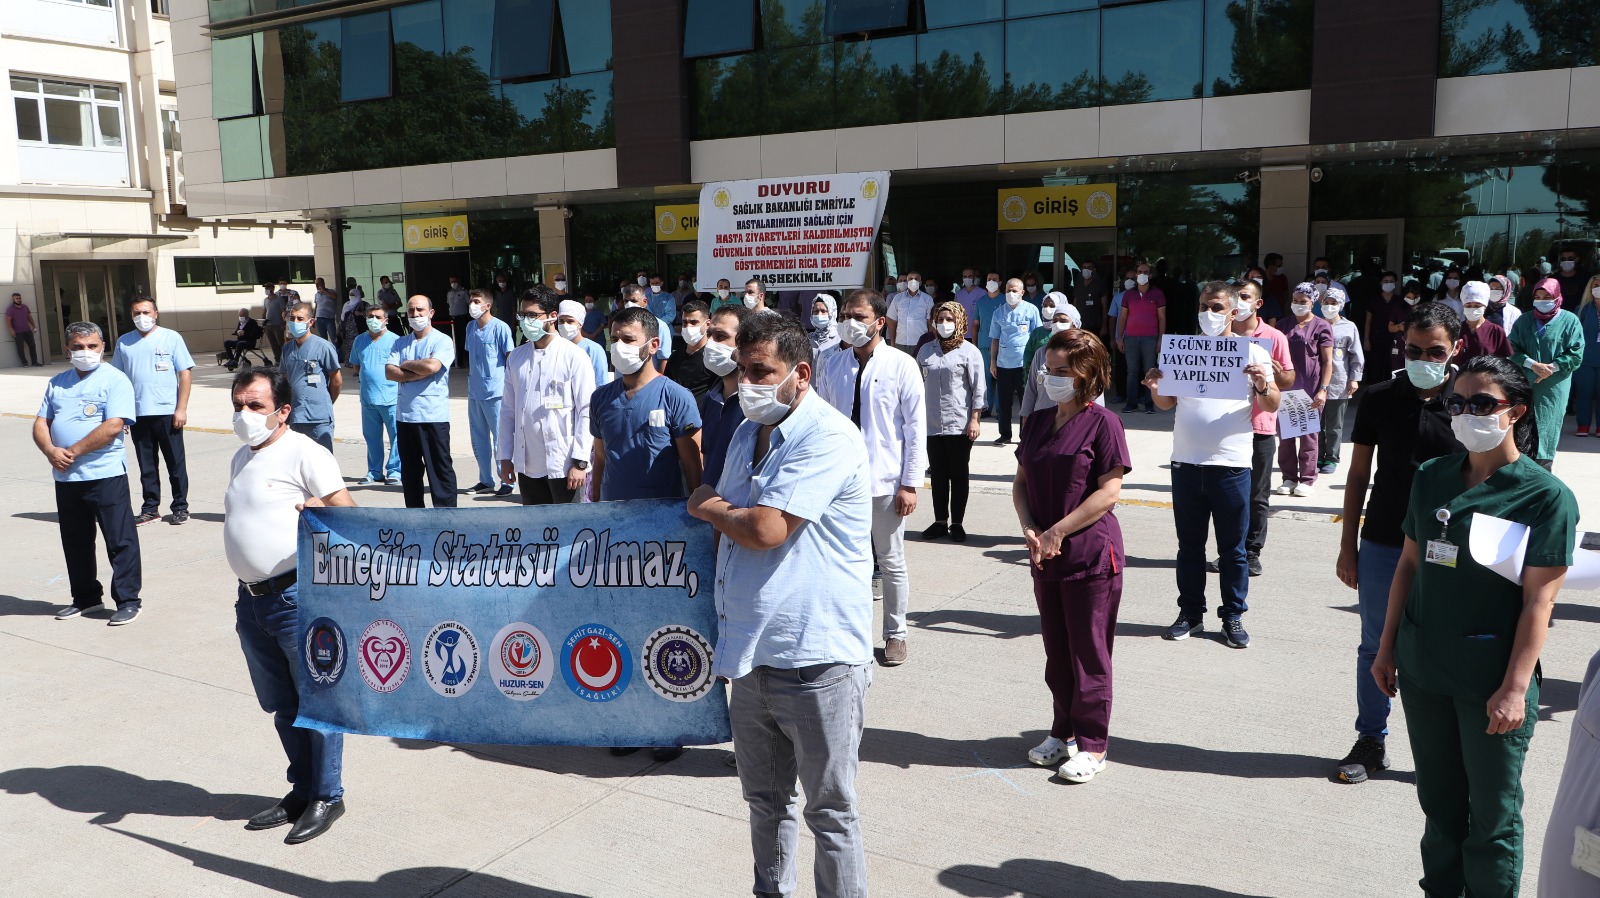 Diyarbakır: Emeğin Statüsü Olmaz